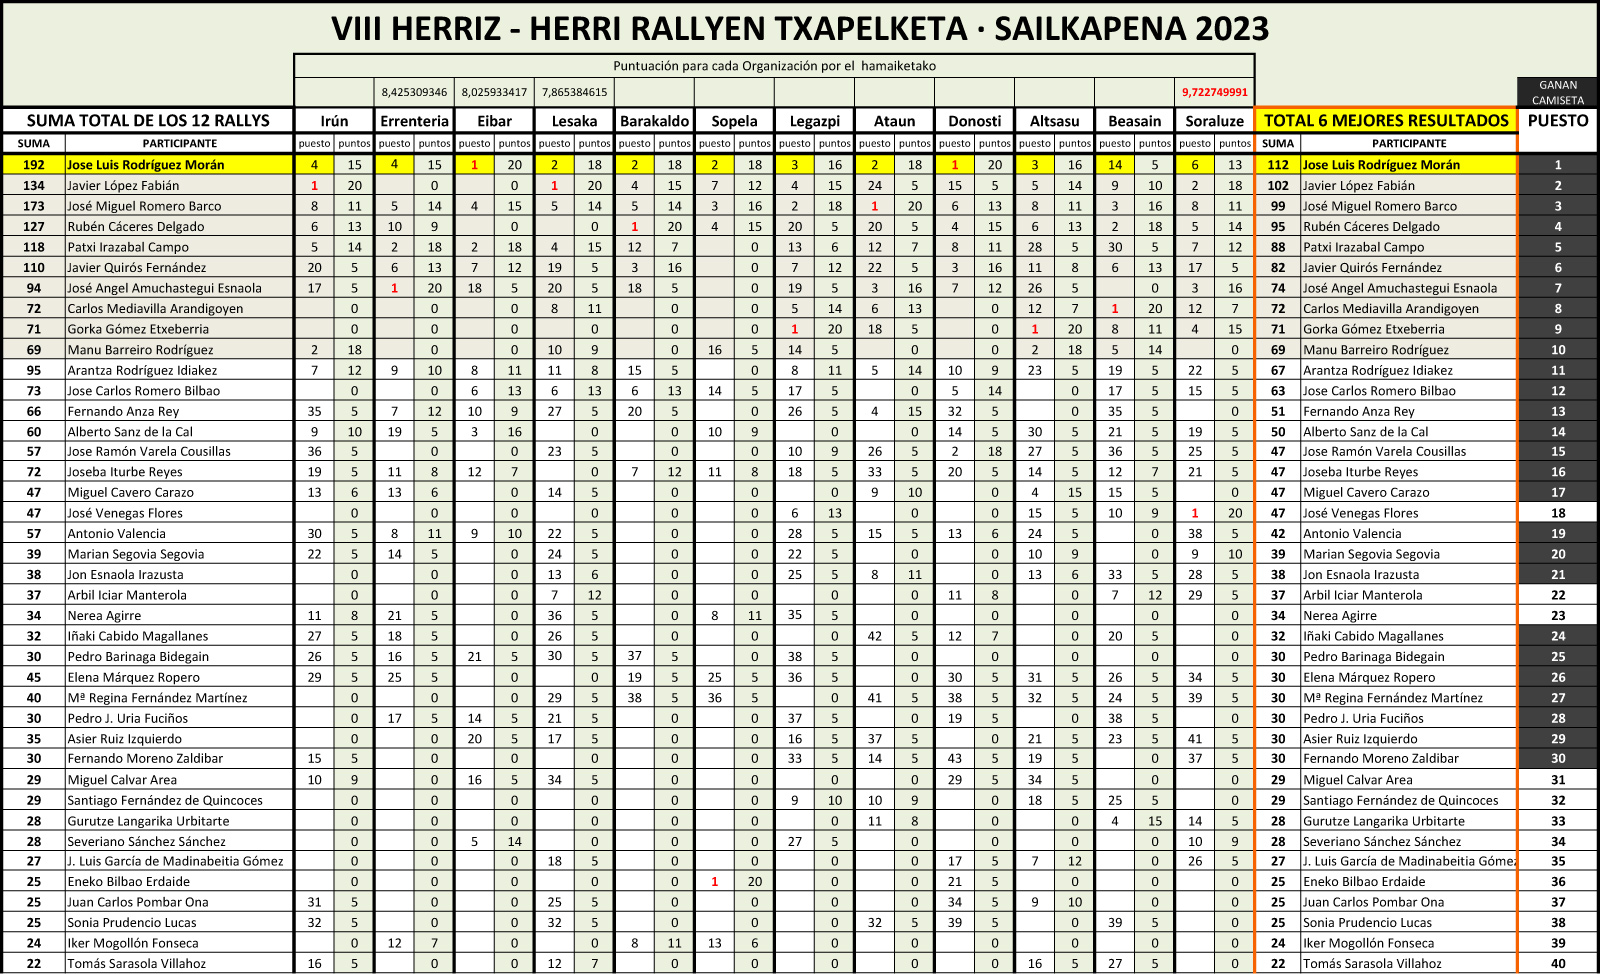 Ésta es la clasificación general del campeonato de rallys fotográficos Herriz Herri, tras el octavo rally fotográfico disputado en Beasain.